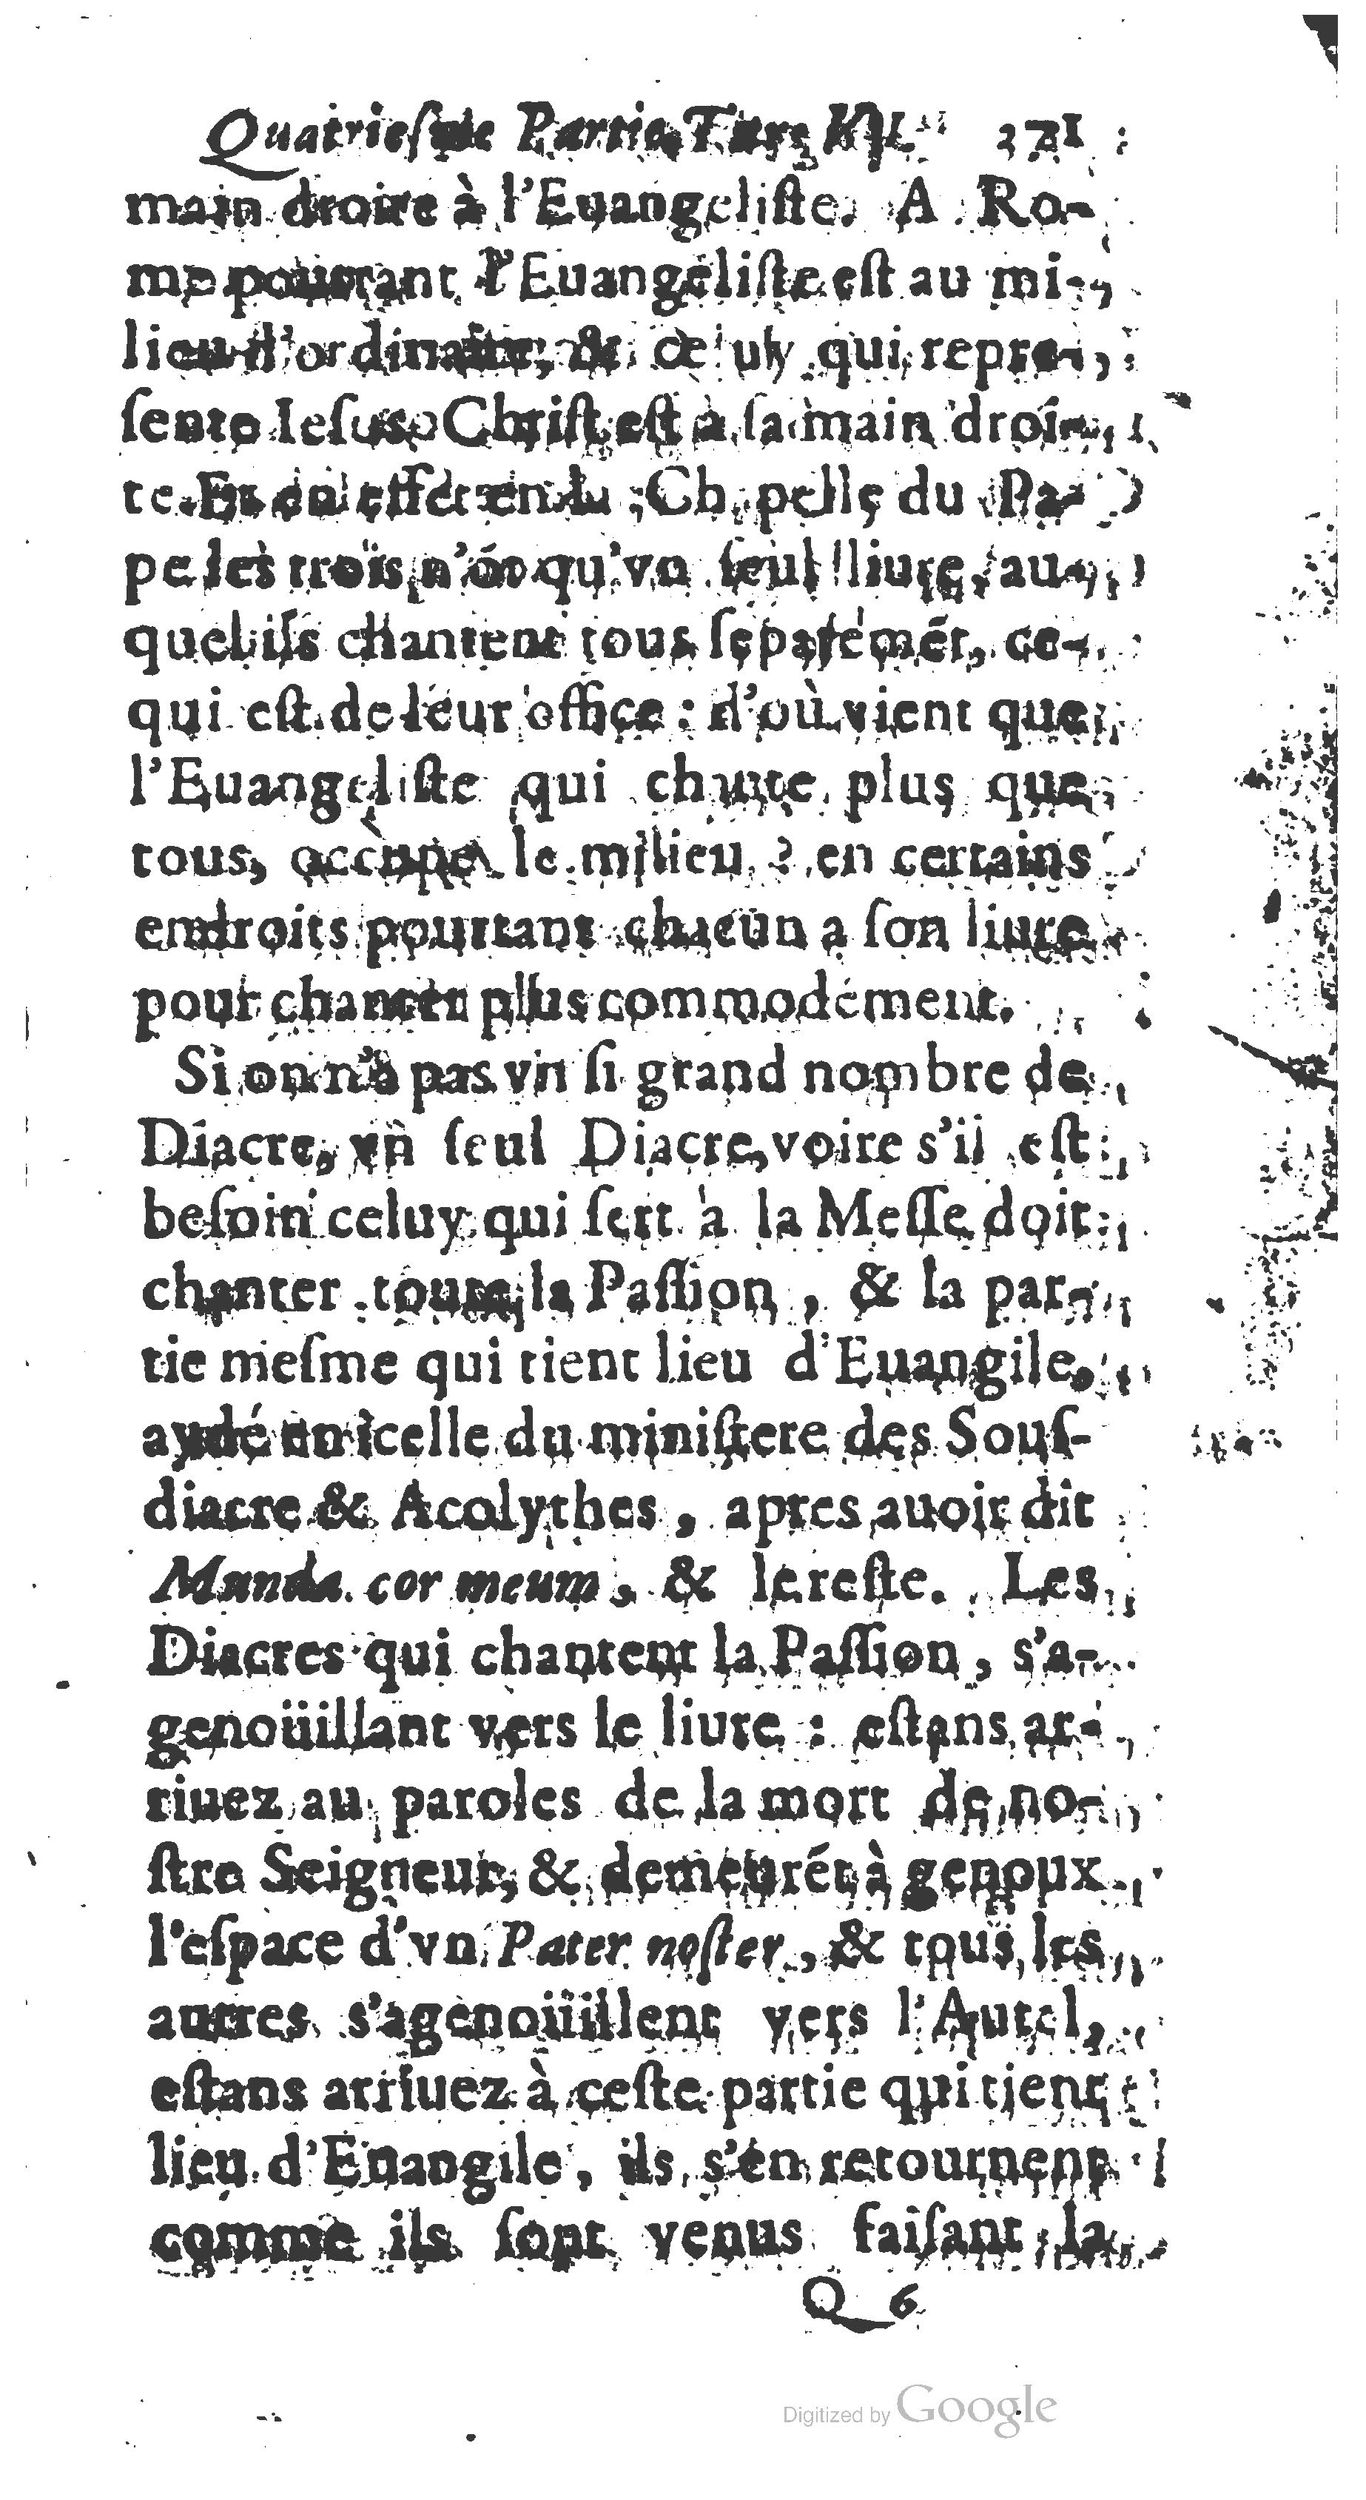 1651 Abrégé du trésor des cérémonies ecclésiastiques Guillermet_BM Lyon_Page_390.jpg